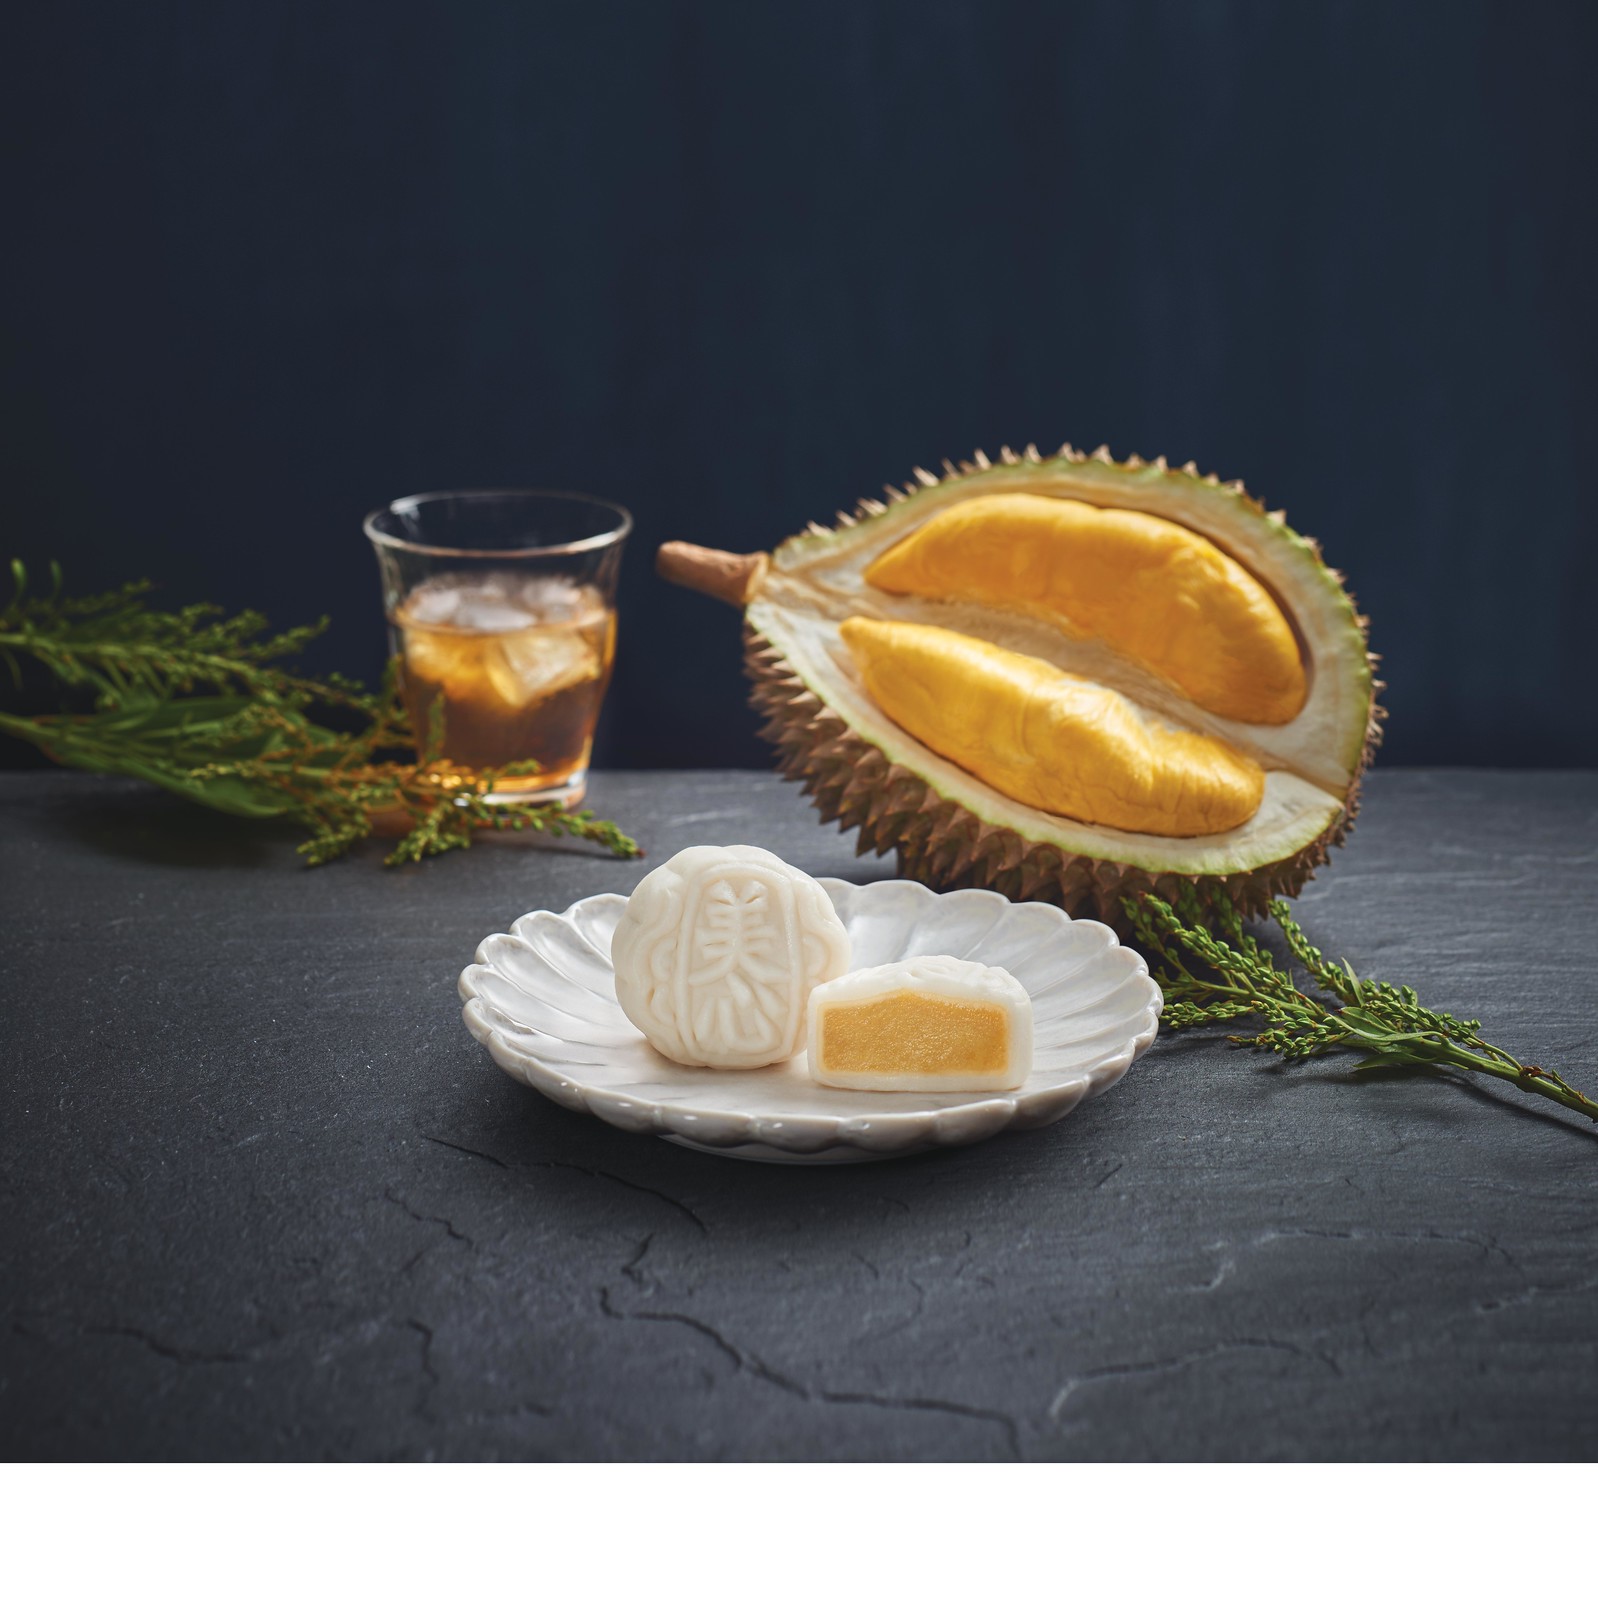 В этом году компания Hong Kong MX представляет восхитительную коллекцию Snowy Mooncakes из подарочной коробки Snowy Snowy mini 4 и Durian от Musang King